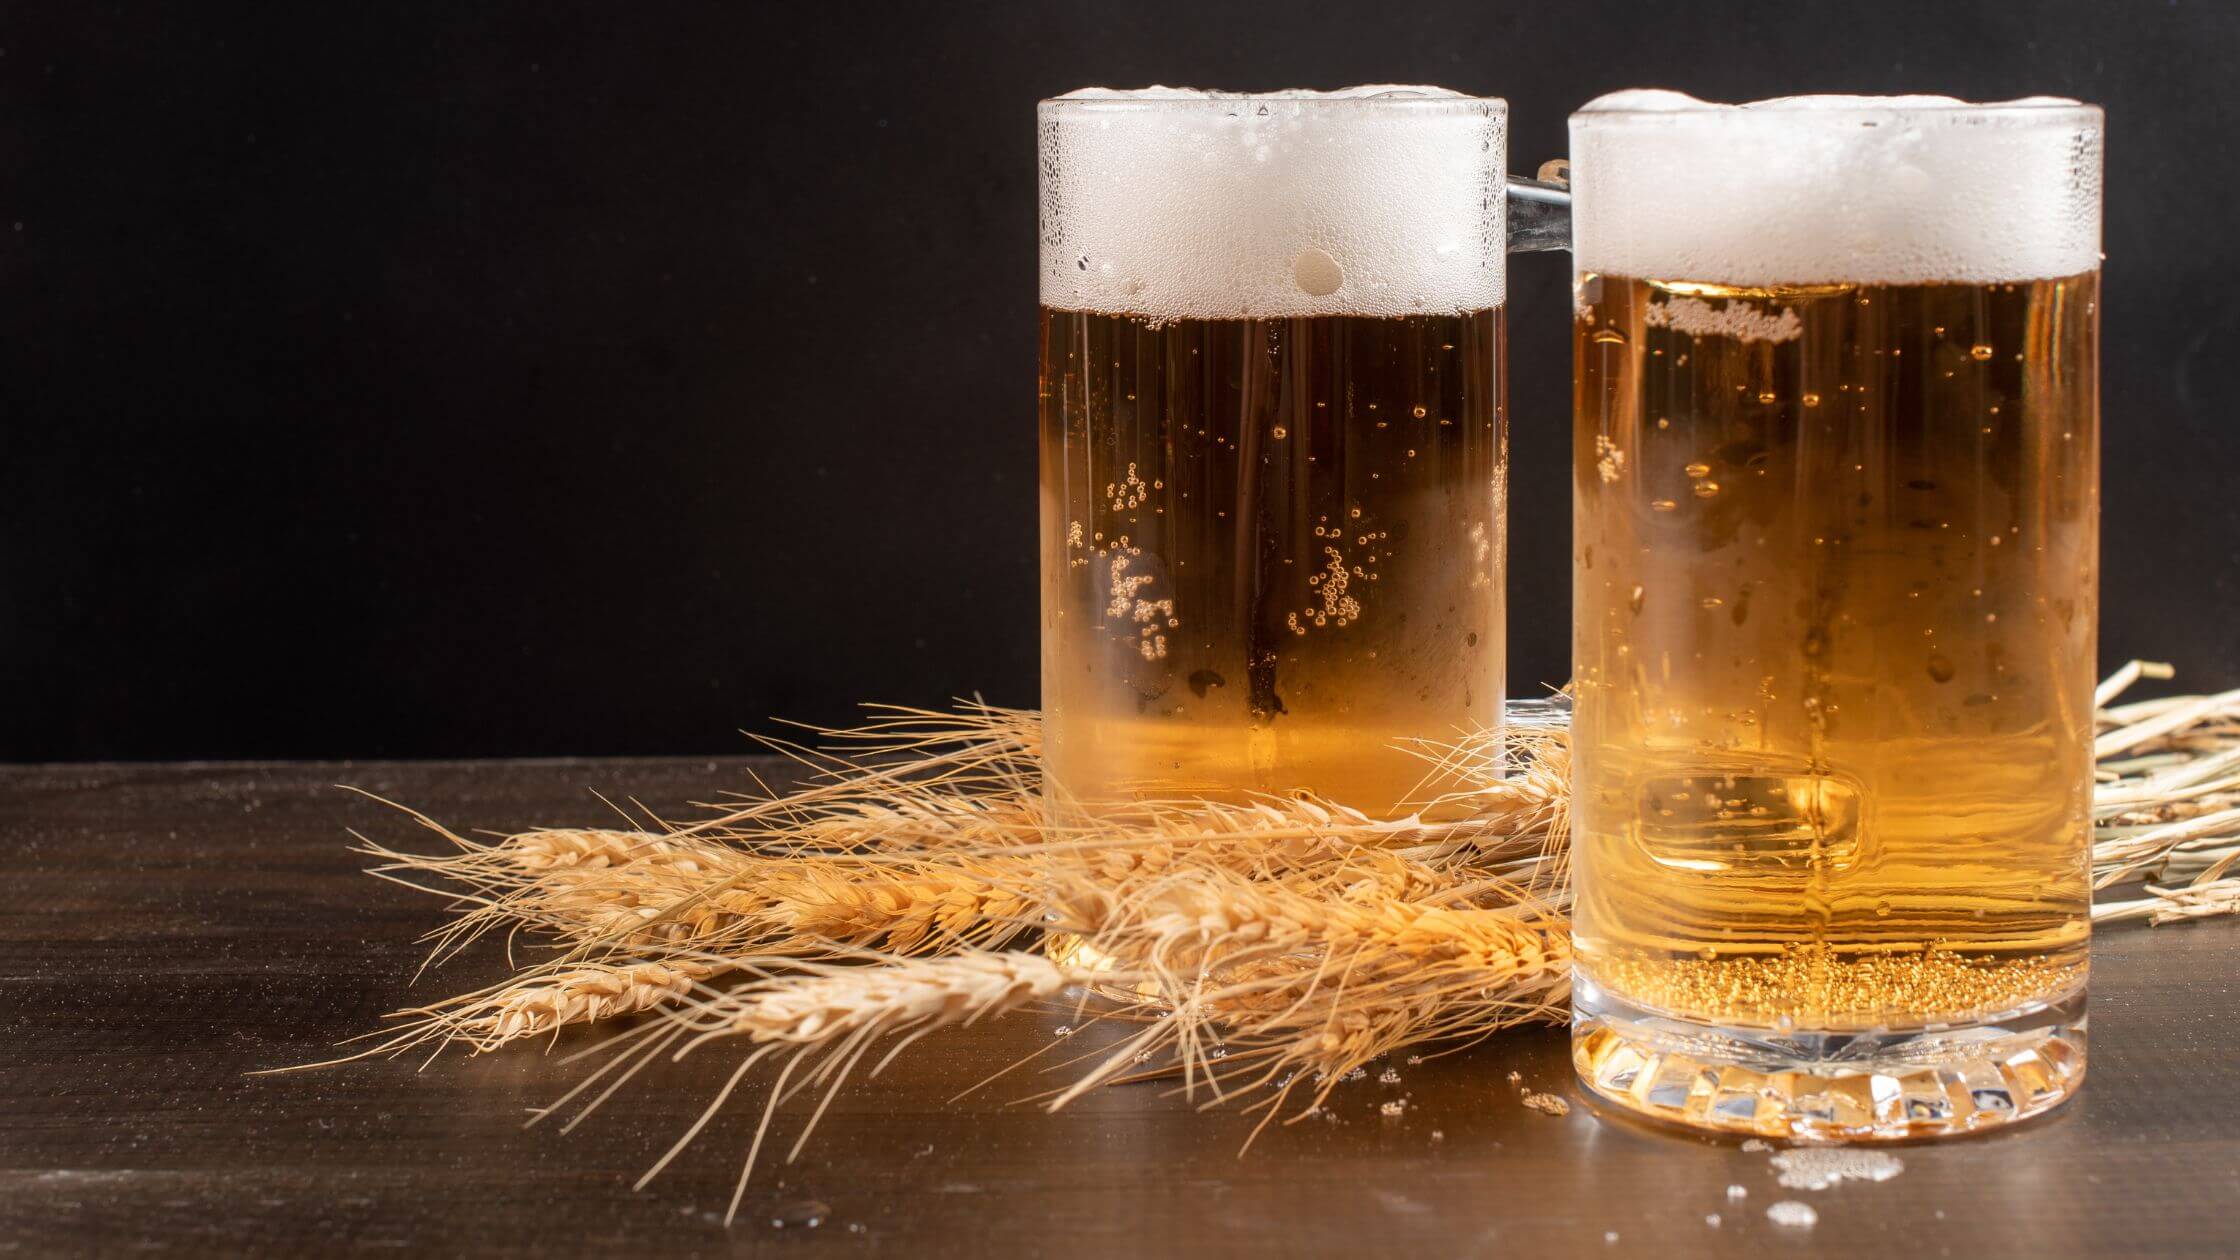 Los sistemas de refrigeración con glicol en la elaboración de cerveza artesanal